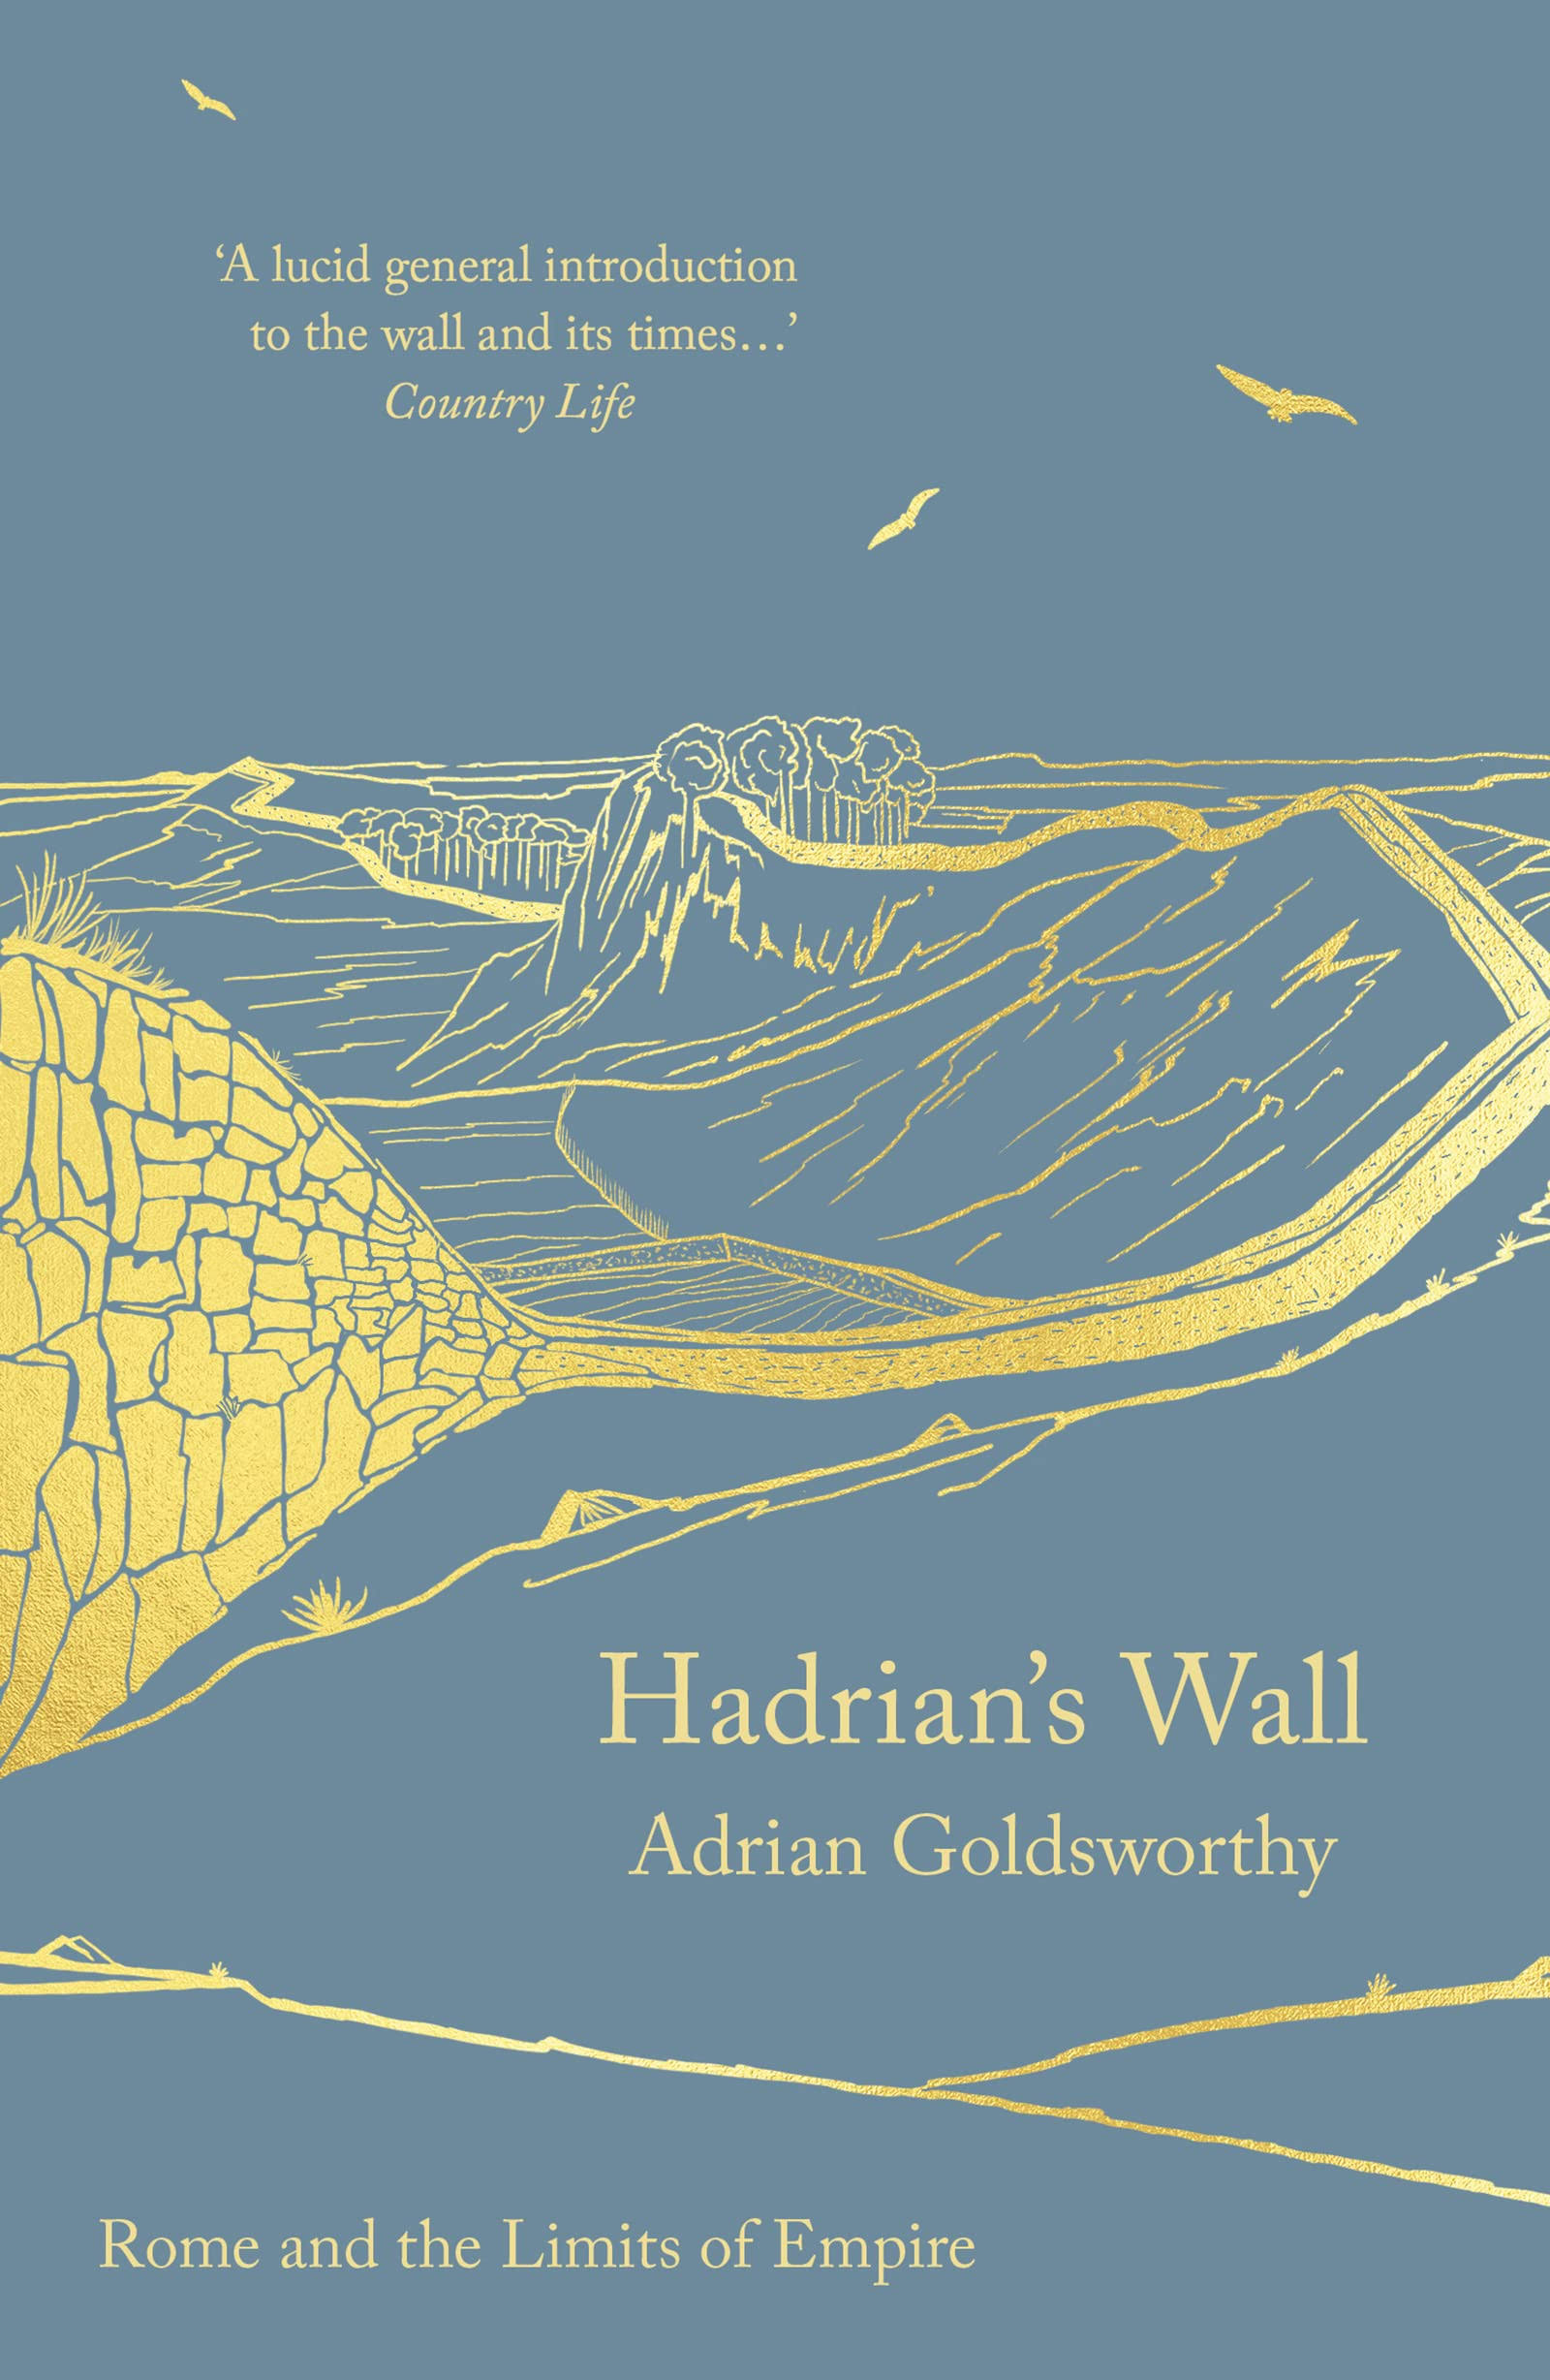 Hadrian's Wall by Adrian Goldsworthy